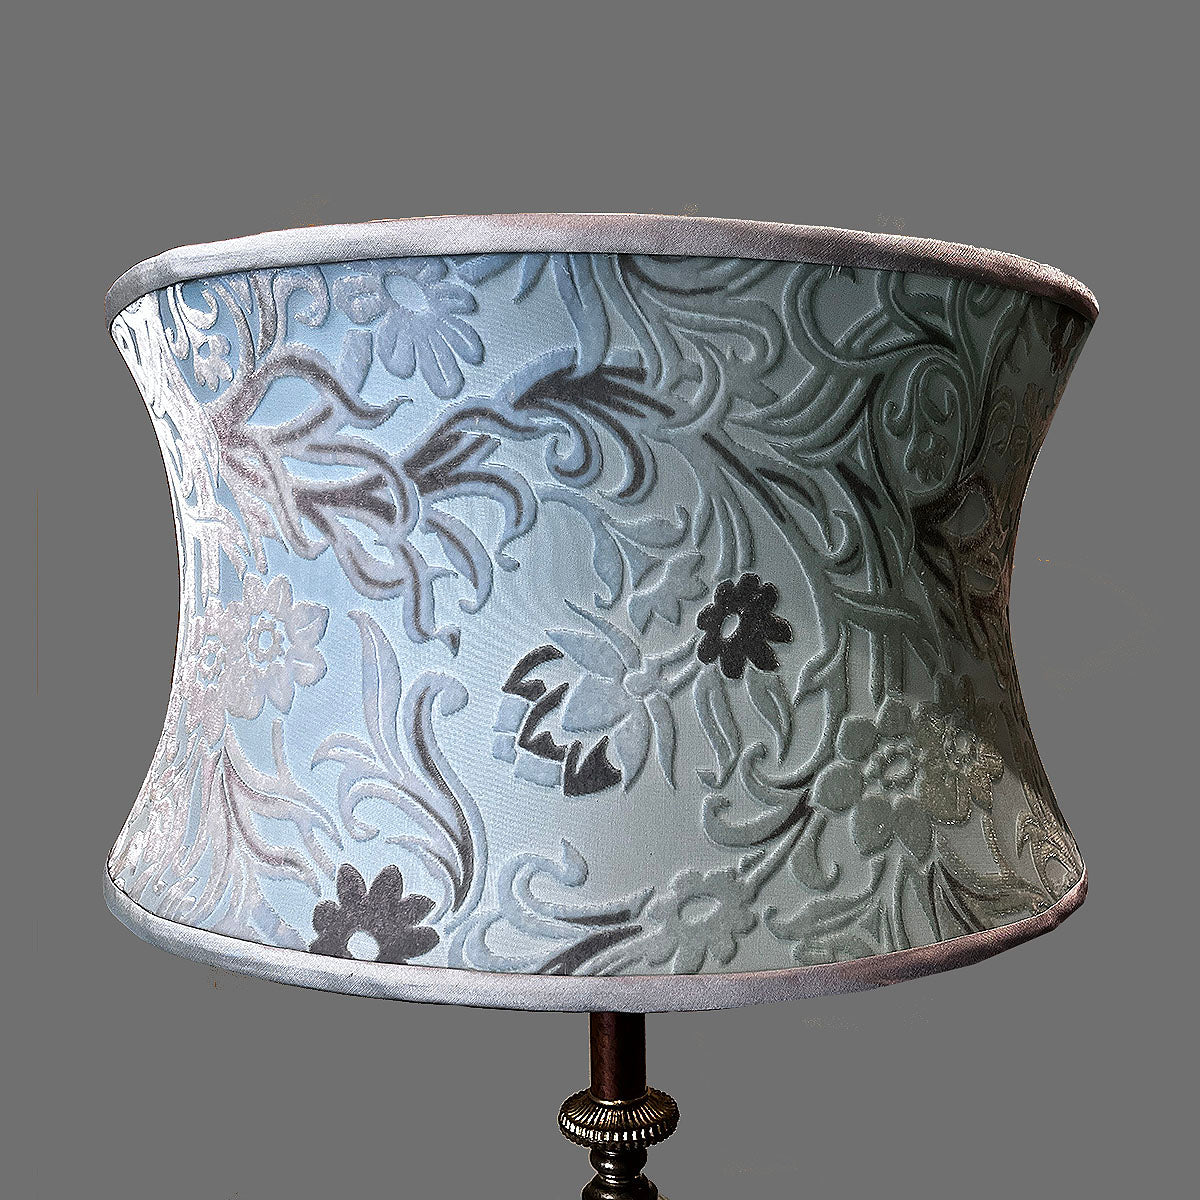 Kiznig Design Al velvet lamp shade by Kevin O'Brien studio